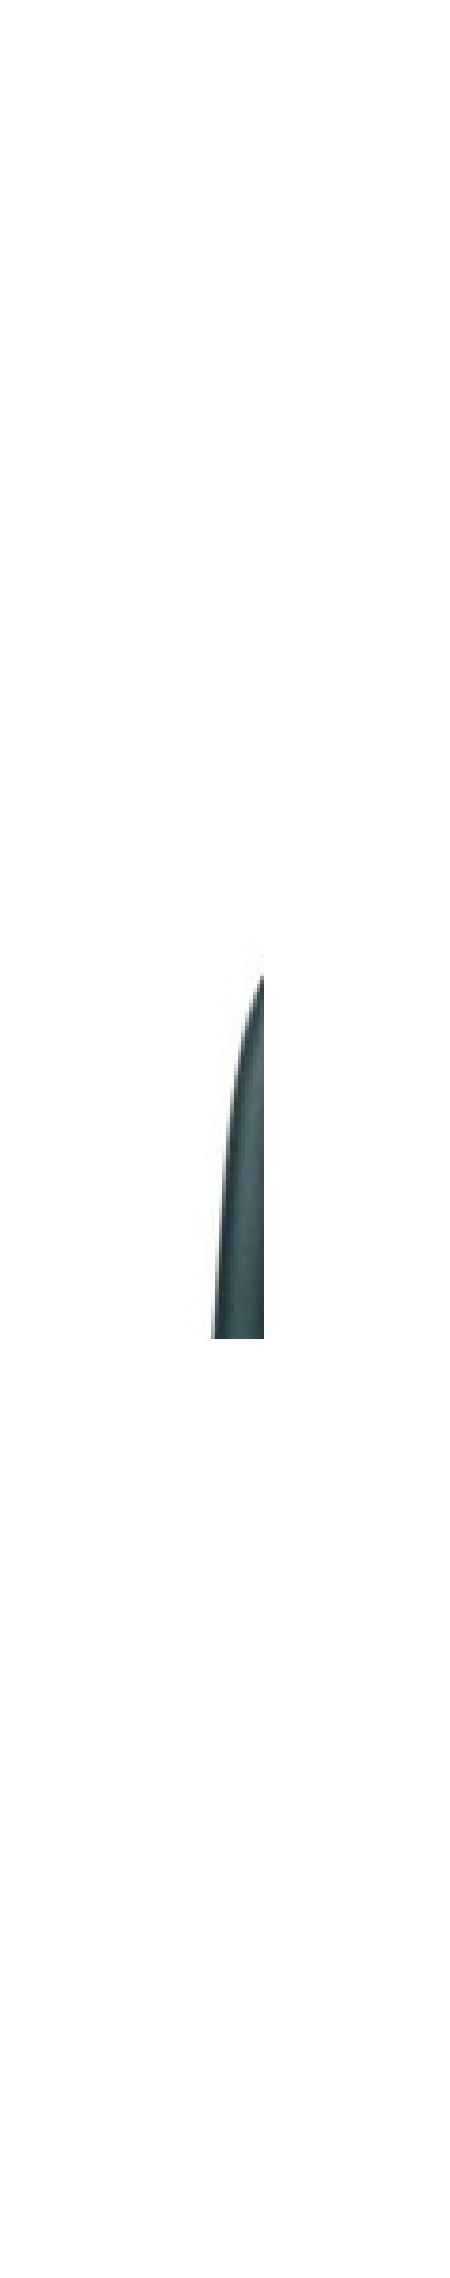 Trixie Расческа частая с крутящимся зубом 22см пластиковая ручка (23771) 0,090 кг 14163